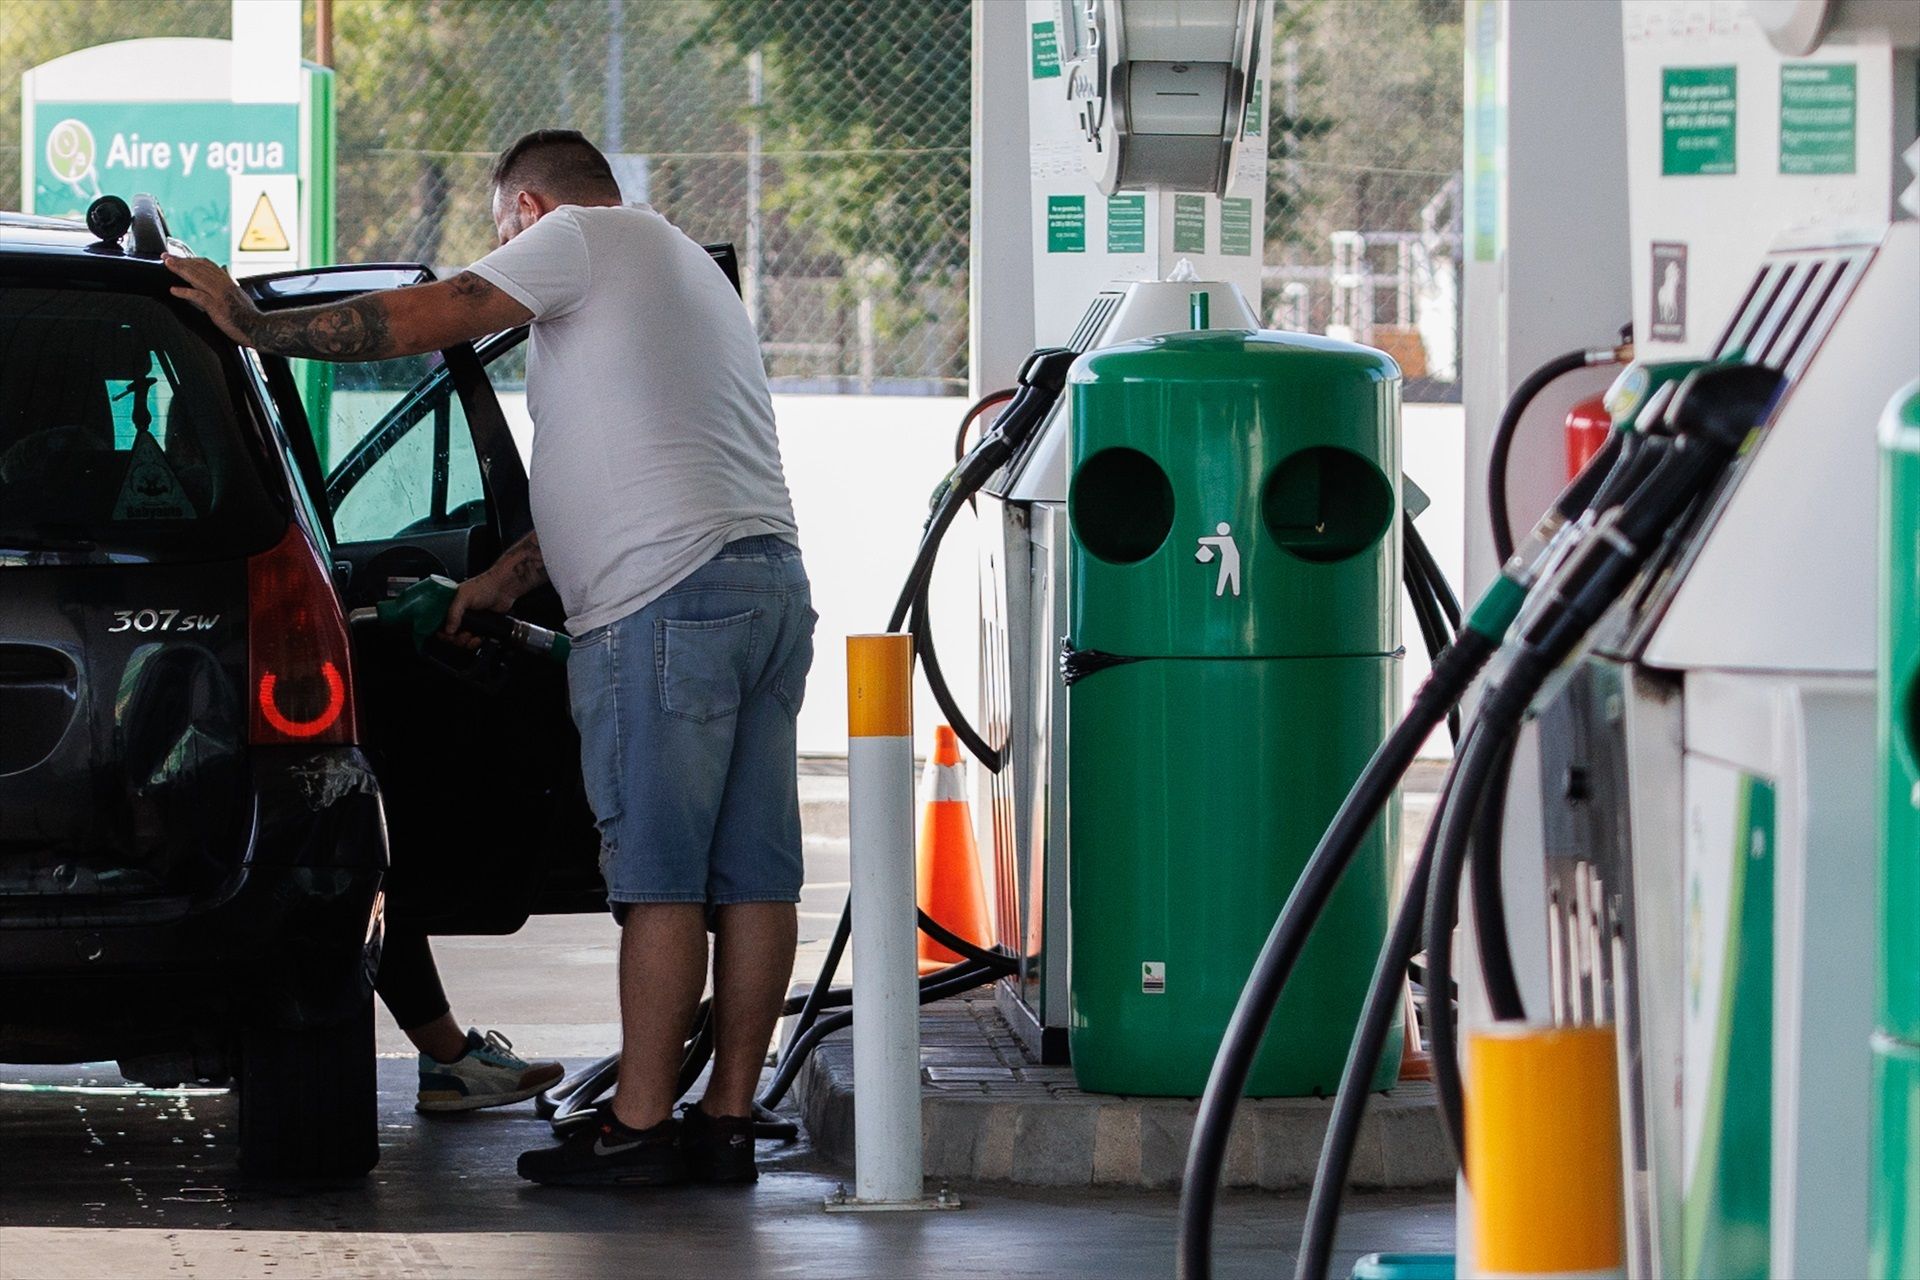 La inflación cae al 3,4% en junio por la bajada del precio de los carburantes